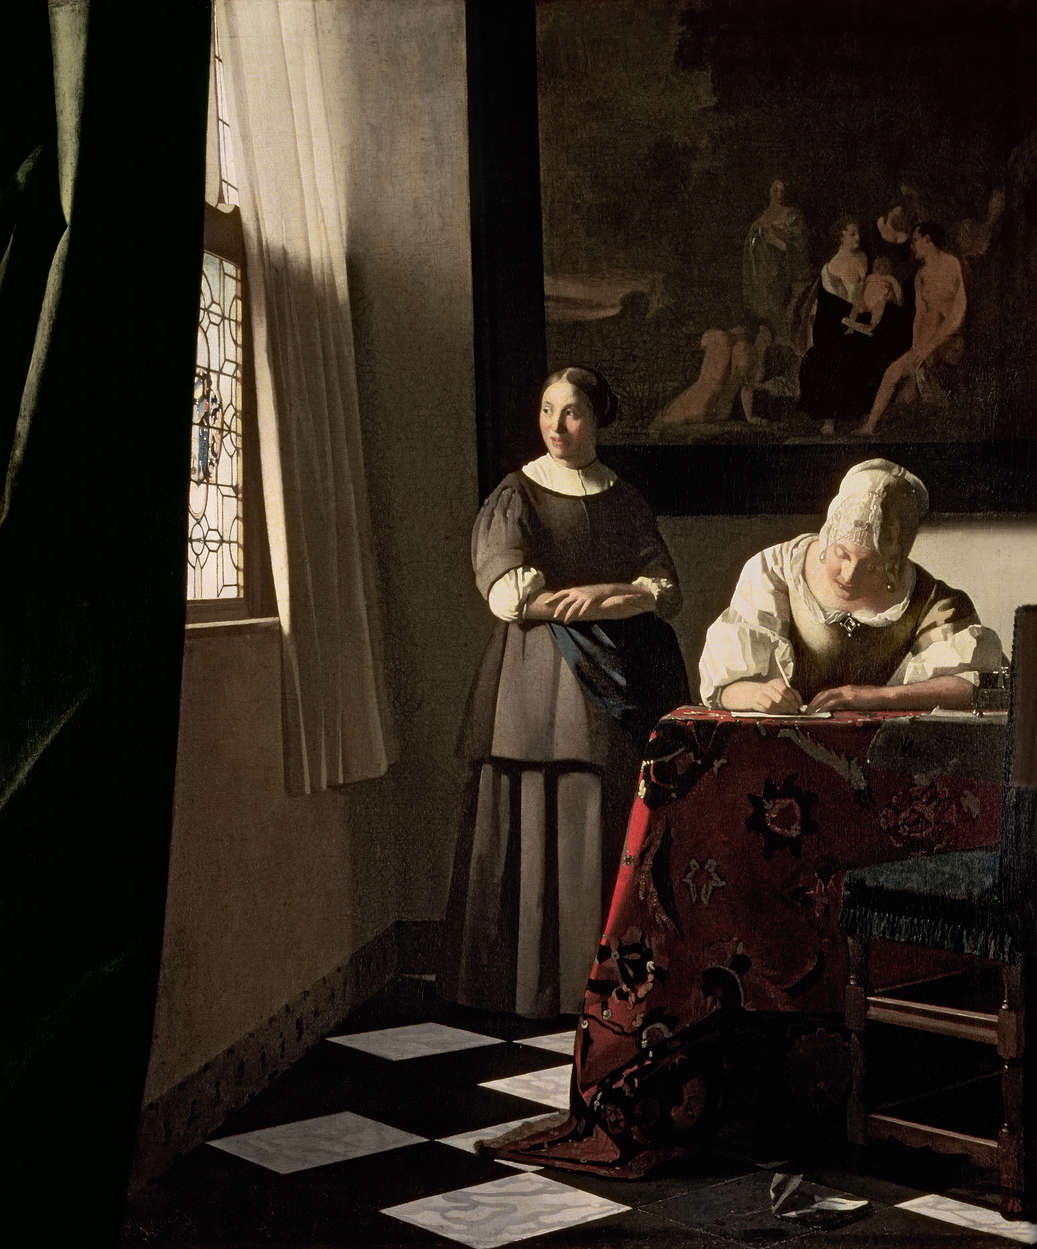             Mural "Dama escribiendo una carta con la criada" de Jan Vermeer
        